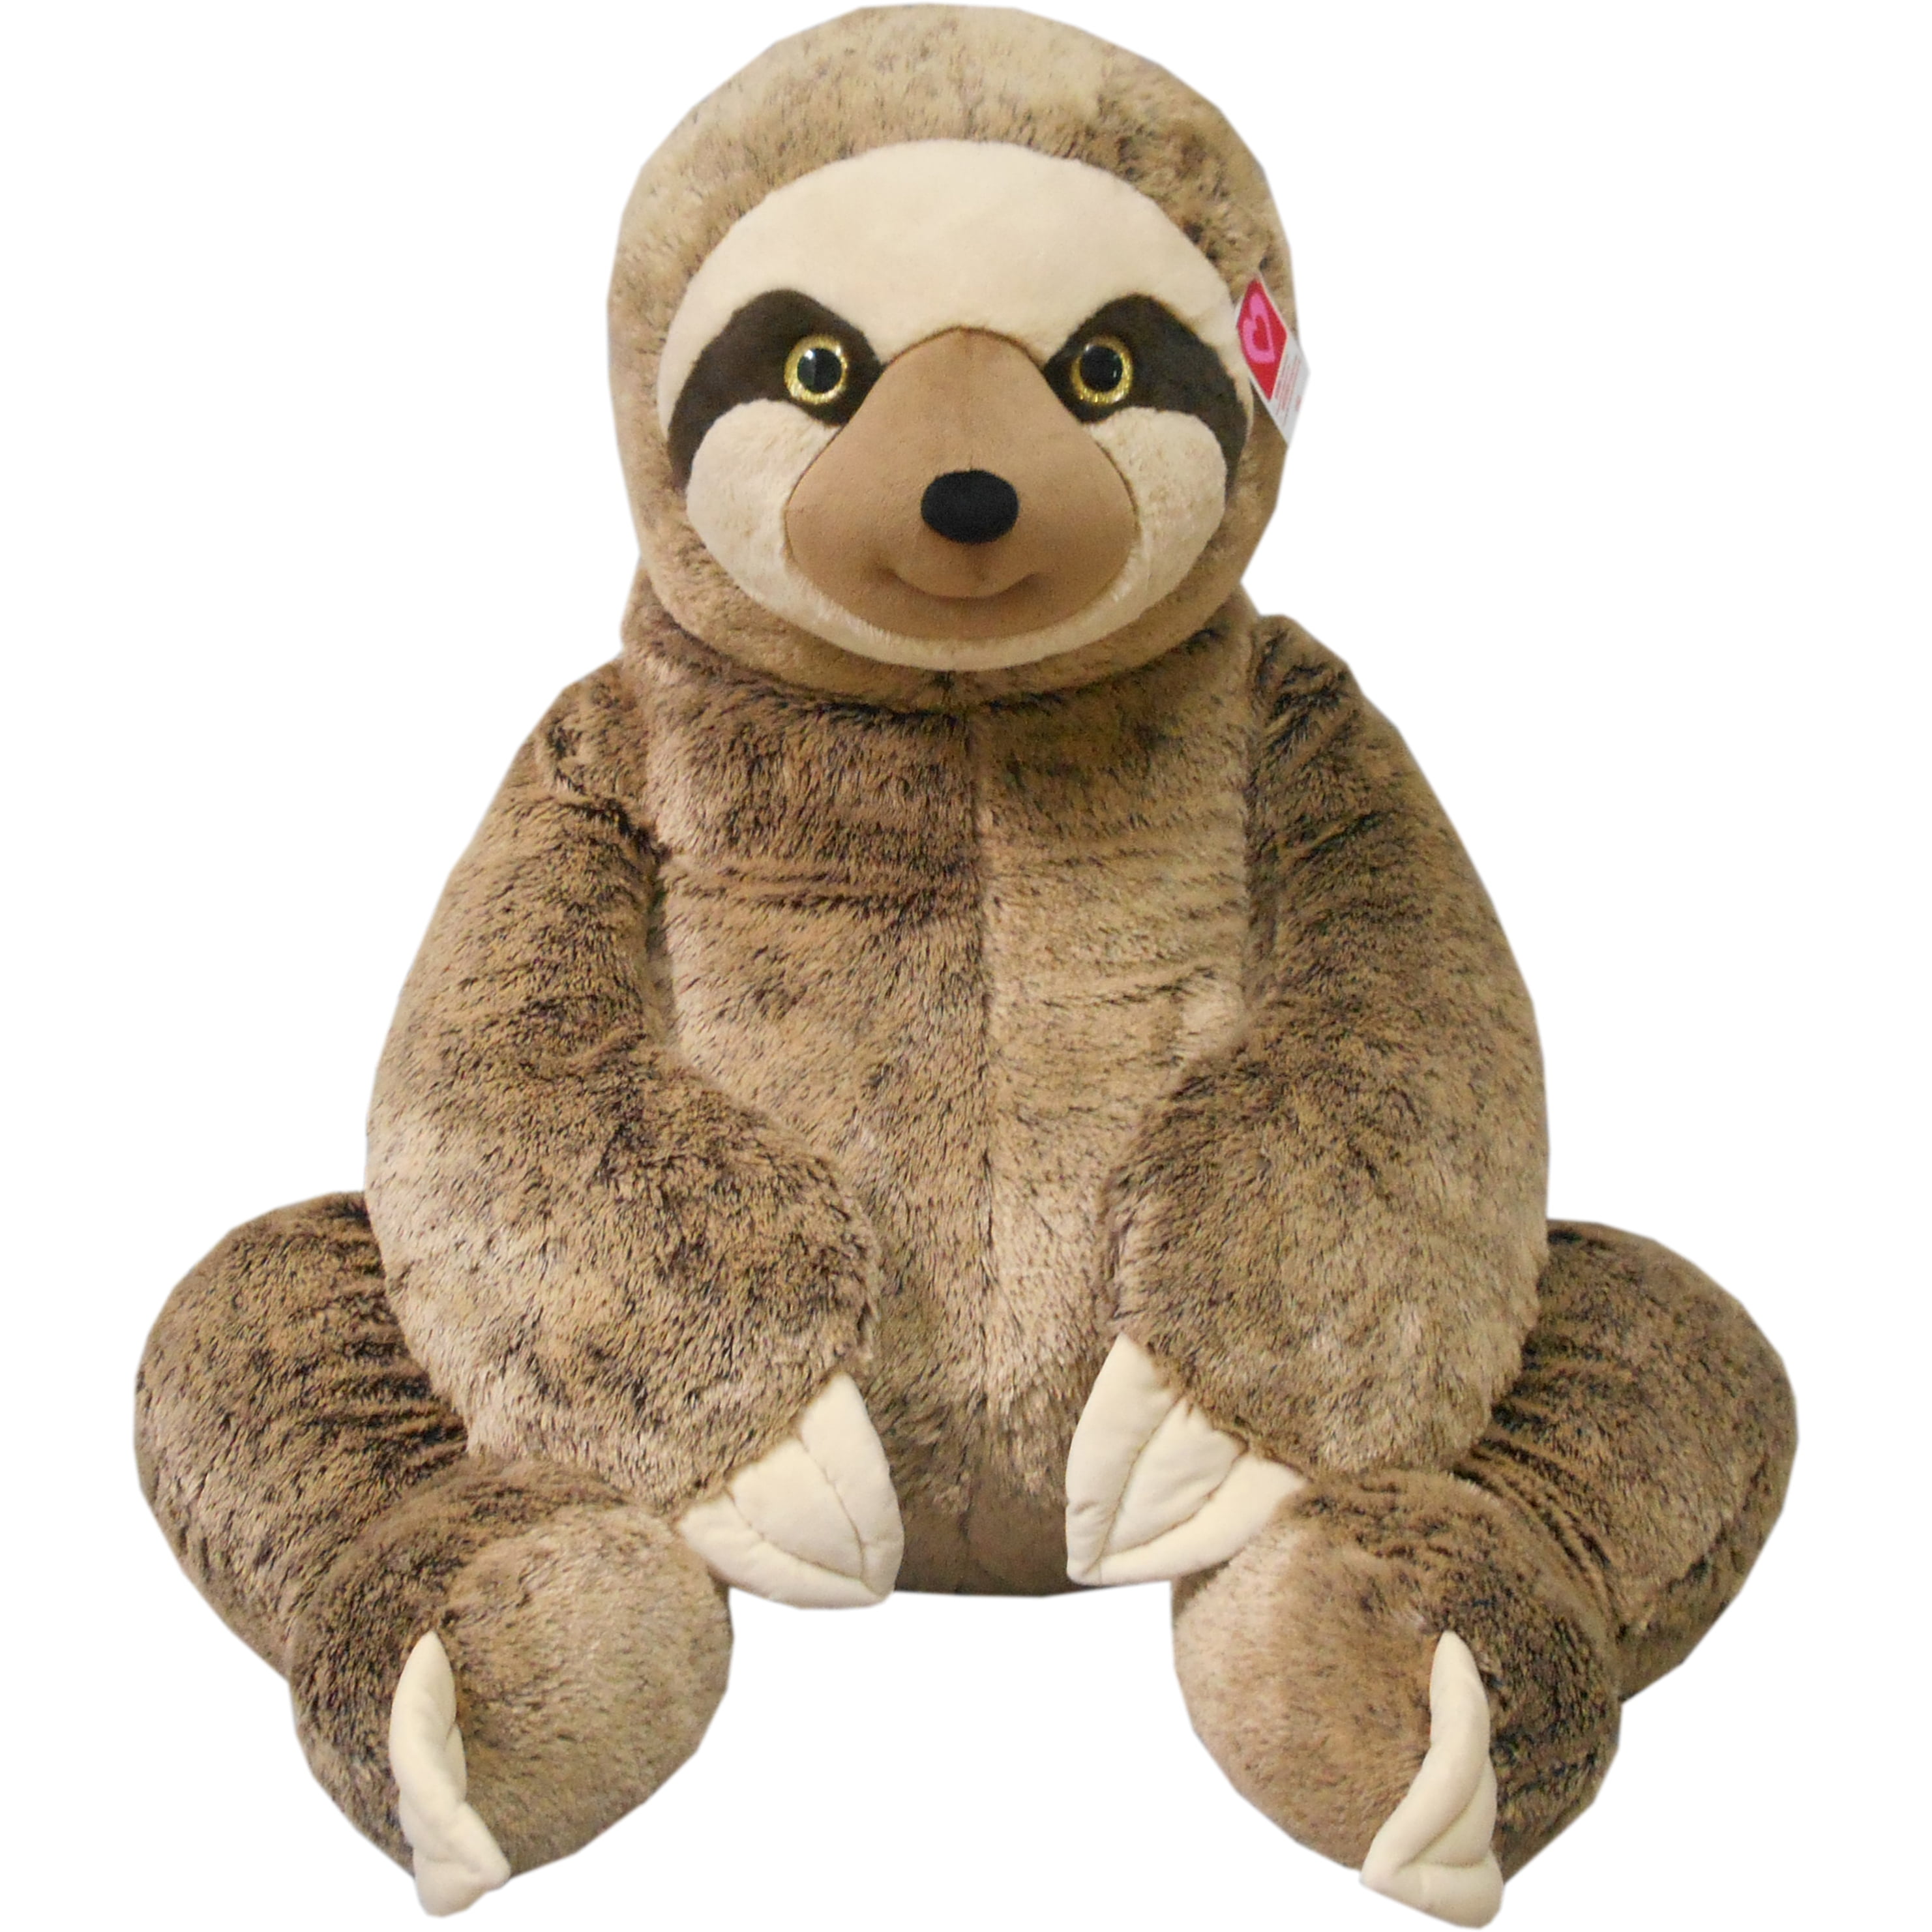 giant rainbow sloth stuffed animal